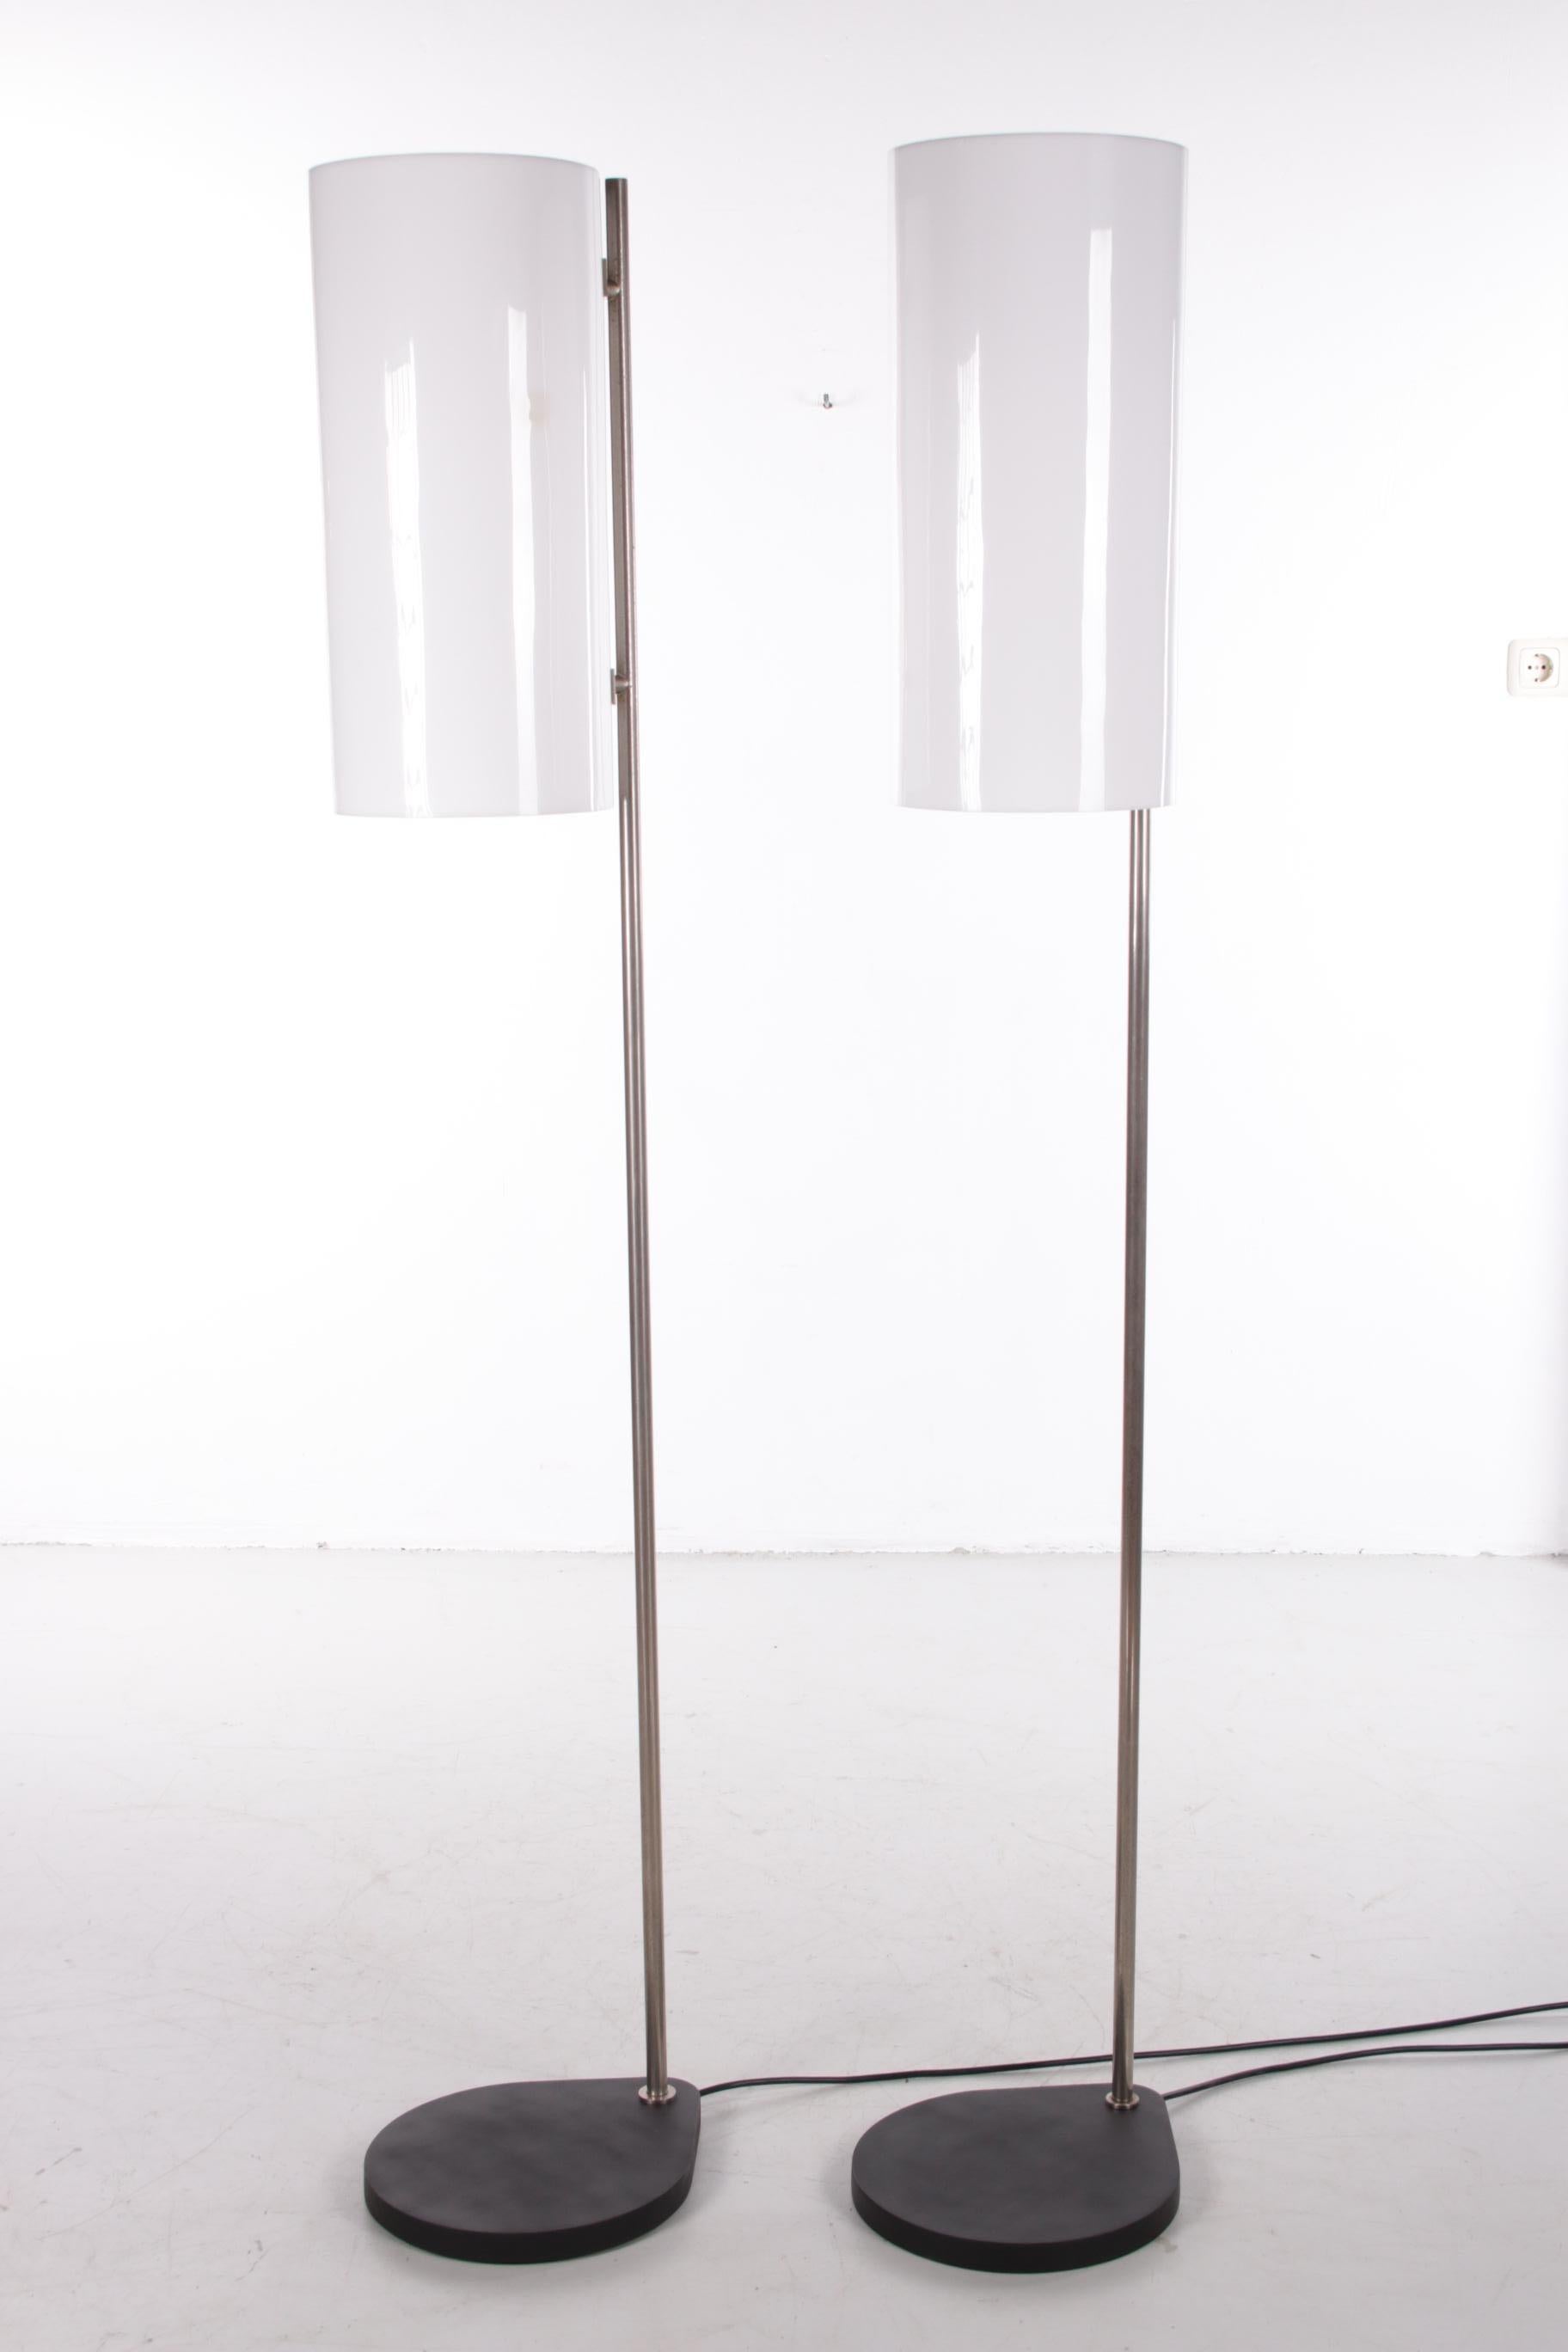 729 / 5000 Vertaalresultaten Vintage Floor Lamp Danish Design by Louis Poulssen 4